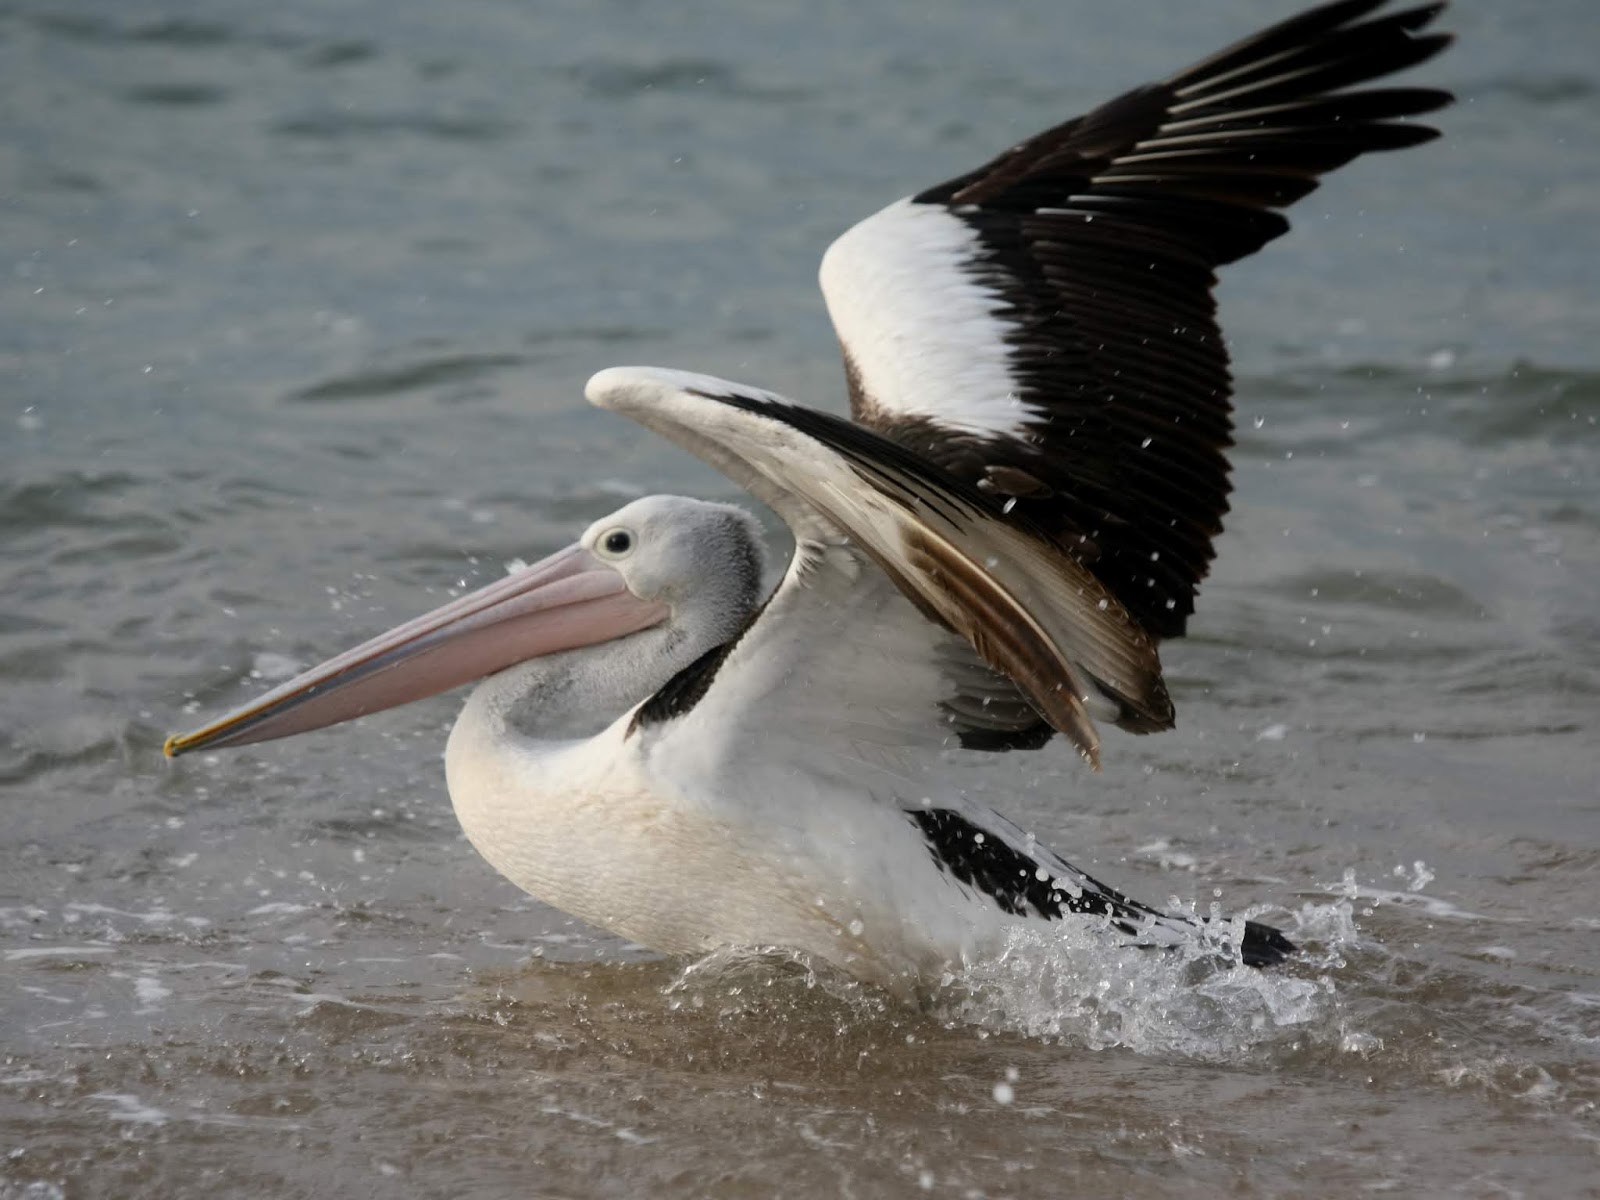 Pelicano batendo as asas sobre a água ilustra este post sobre o Shijing, o Livro das Canções.